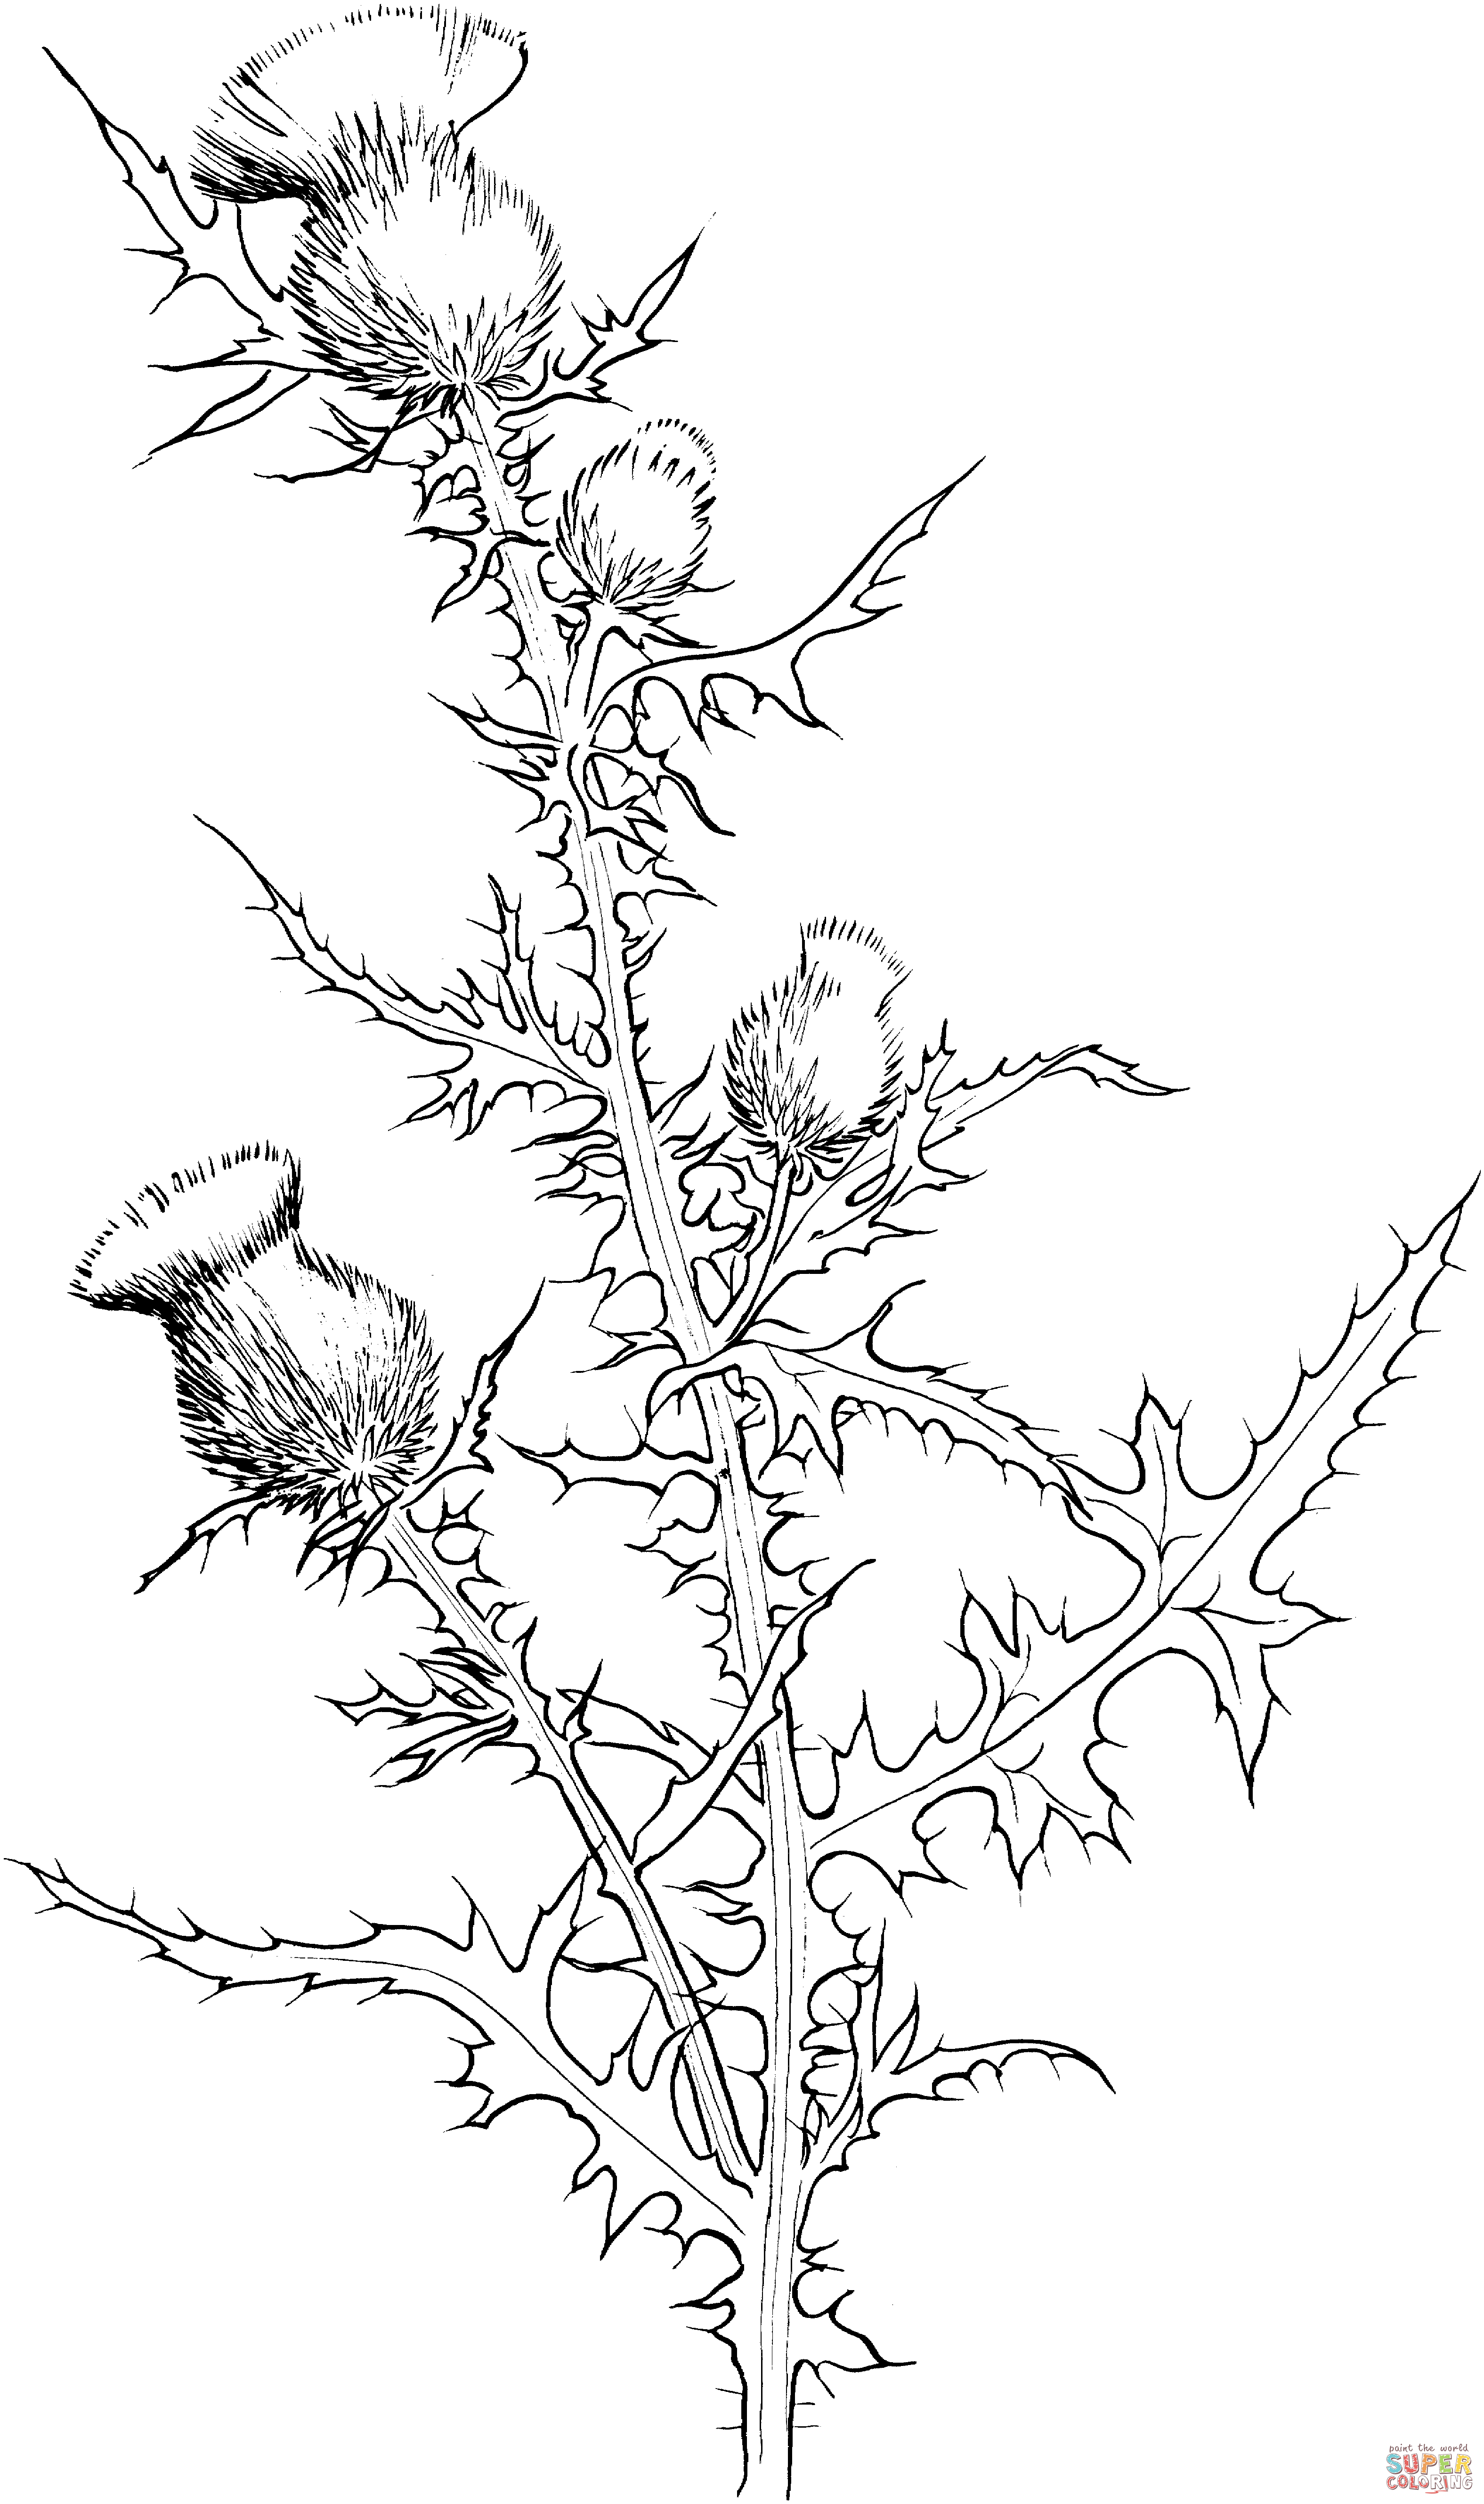 Cirsium Vulgare ou Cardo-touro de Cardo